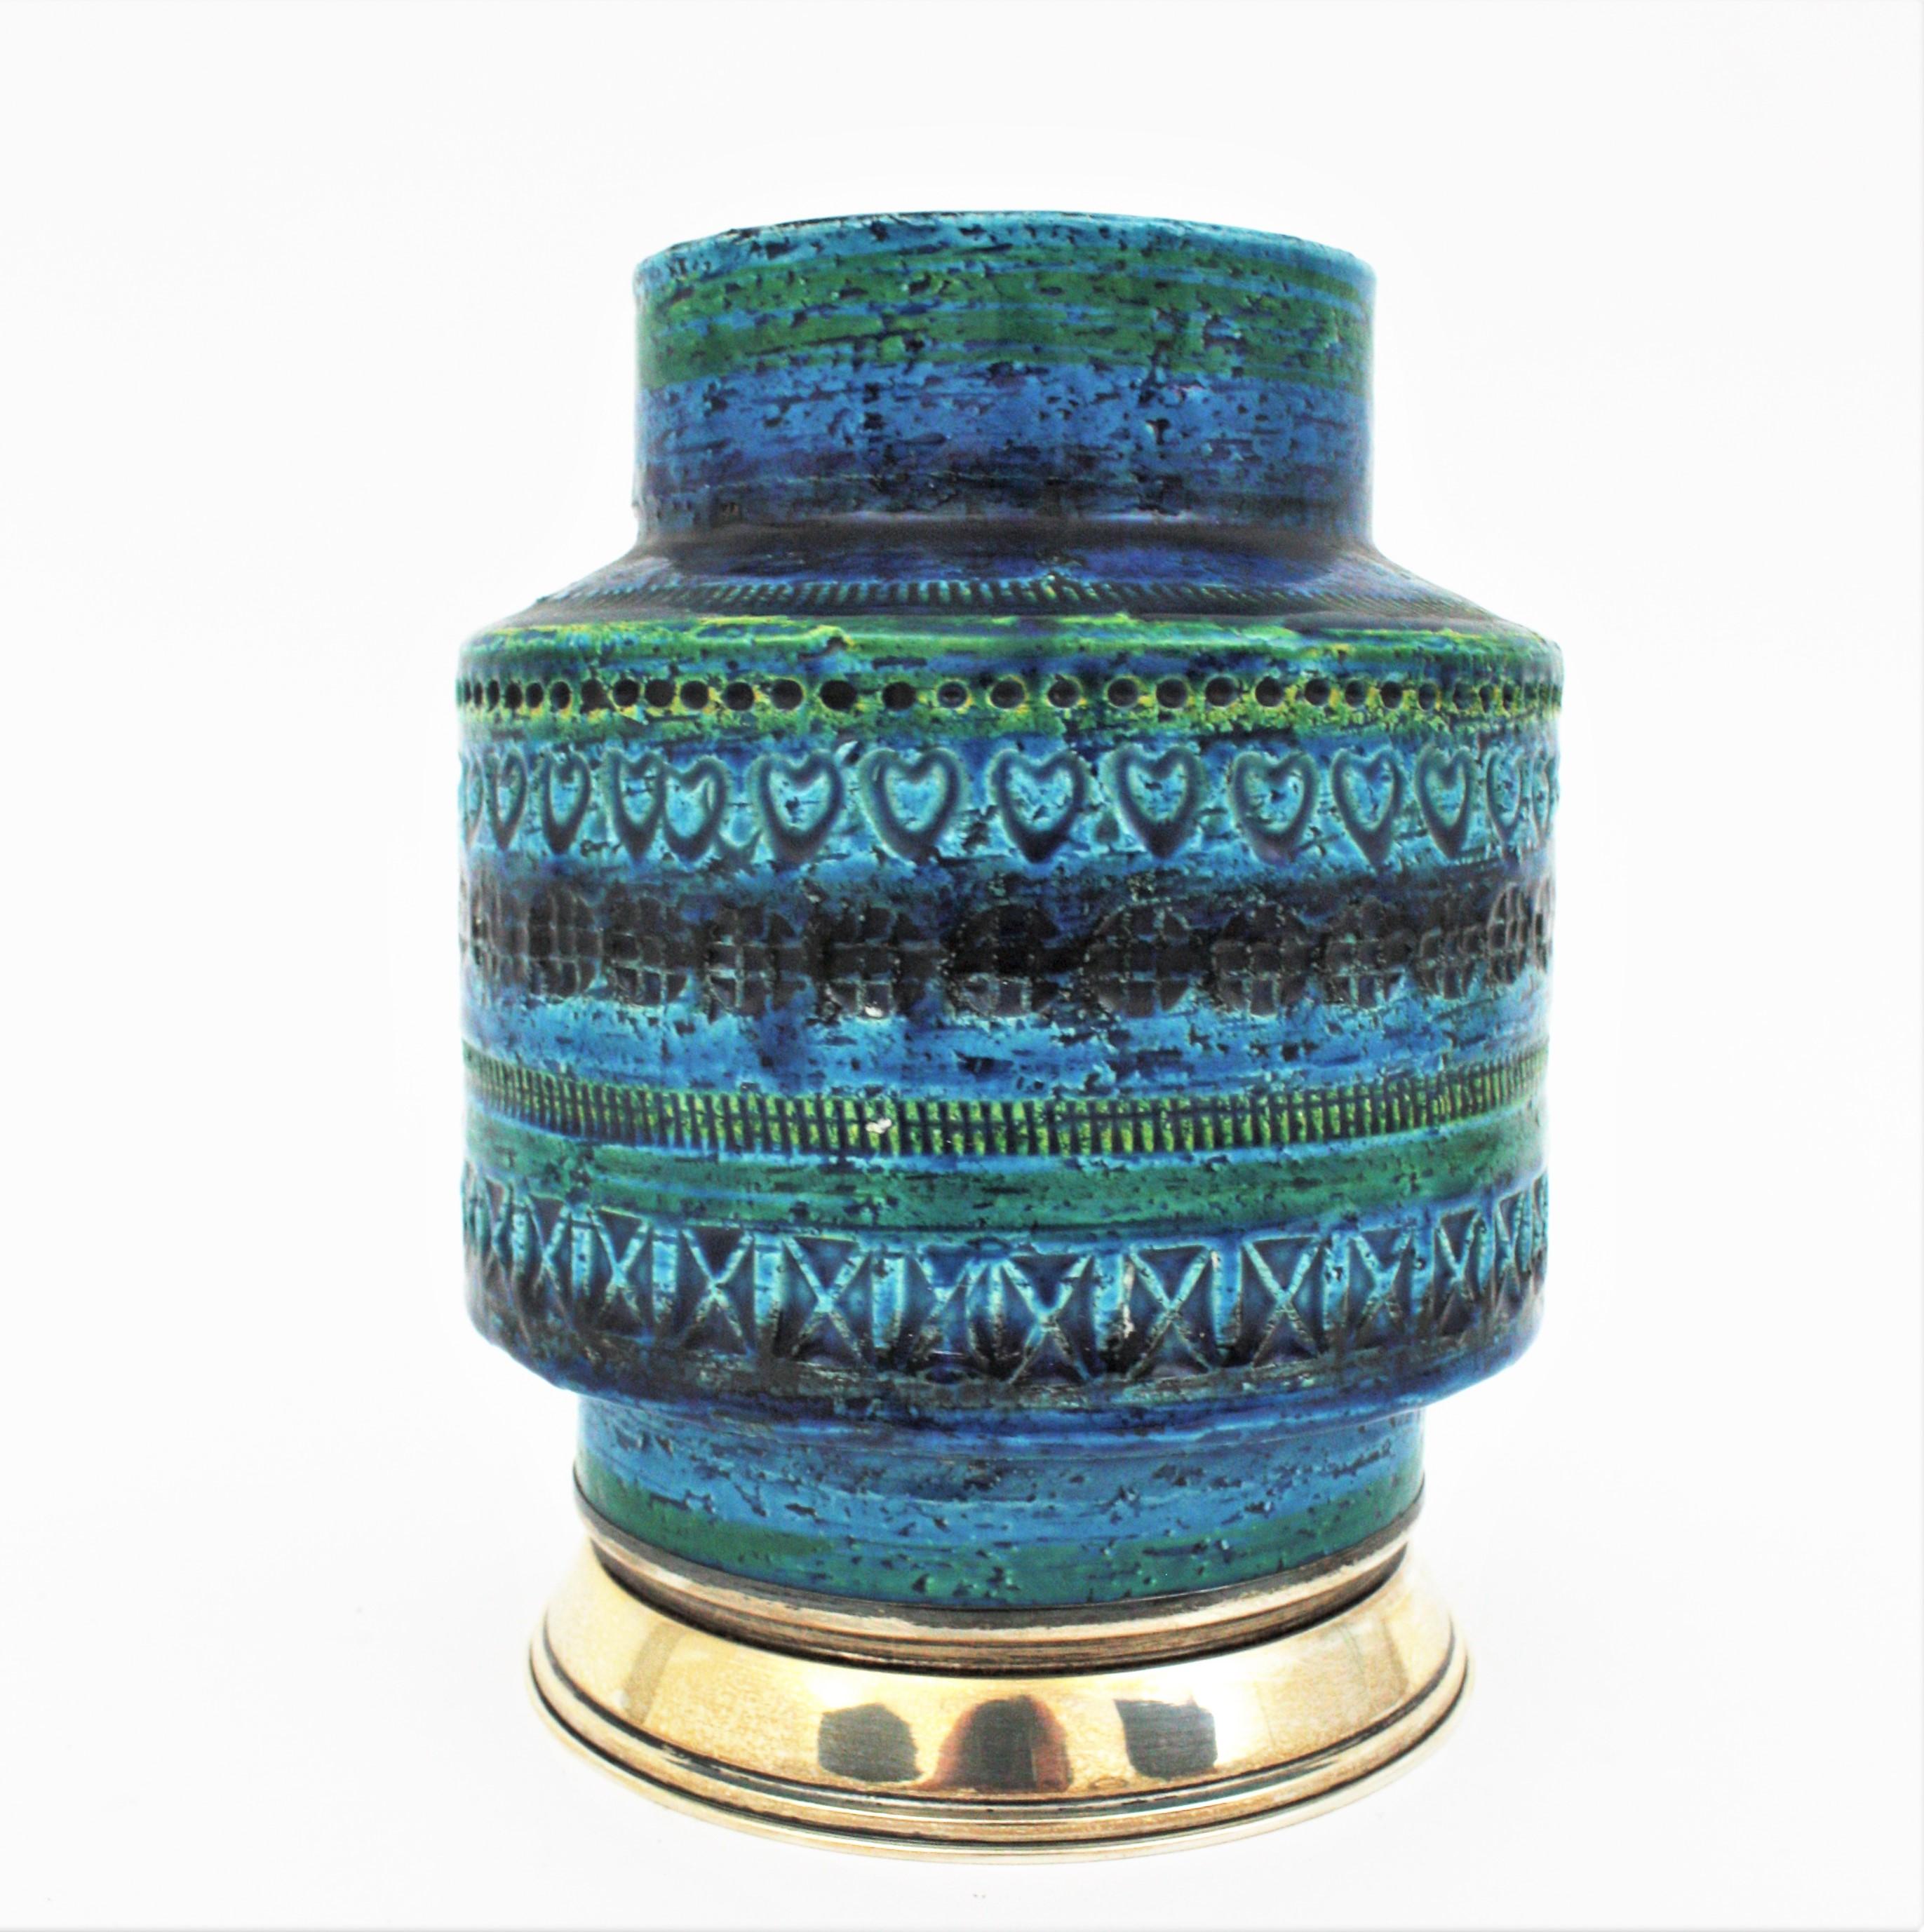 Glazed Bitossi Aldo Londi Rimini Blue Ceramic Vase on Sterling Silver Base, 1960s For Sale